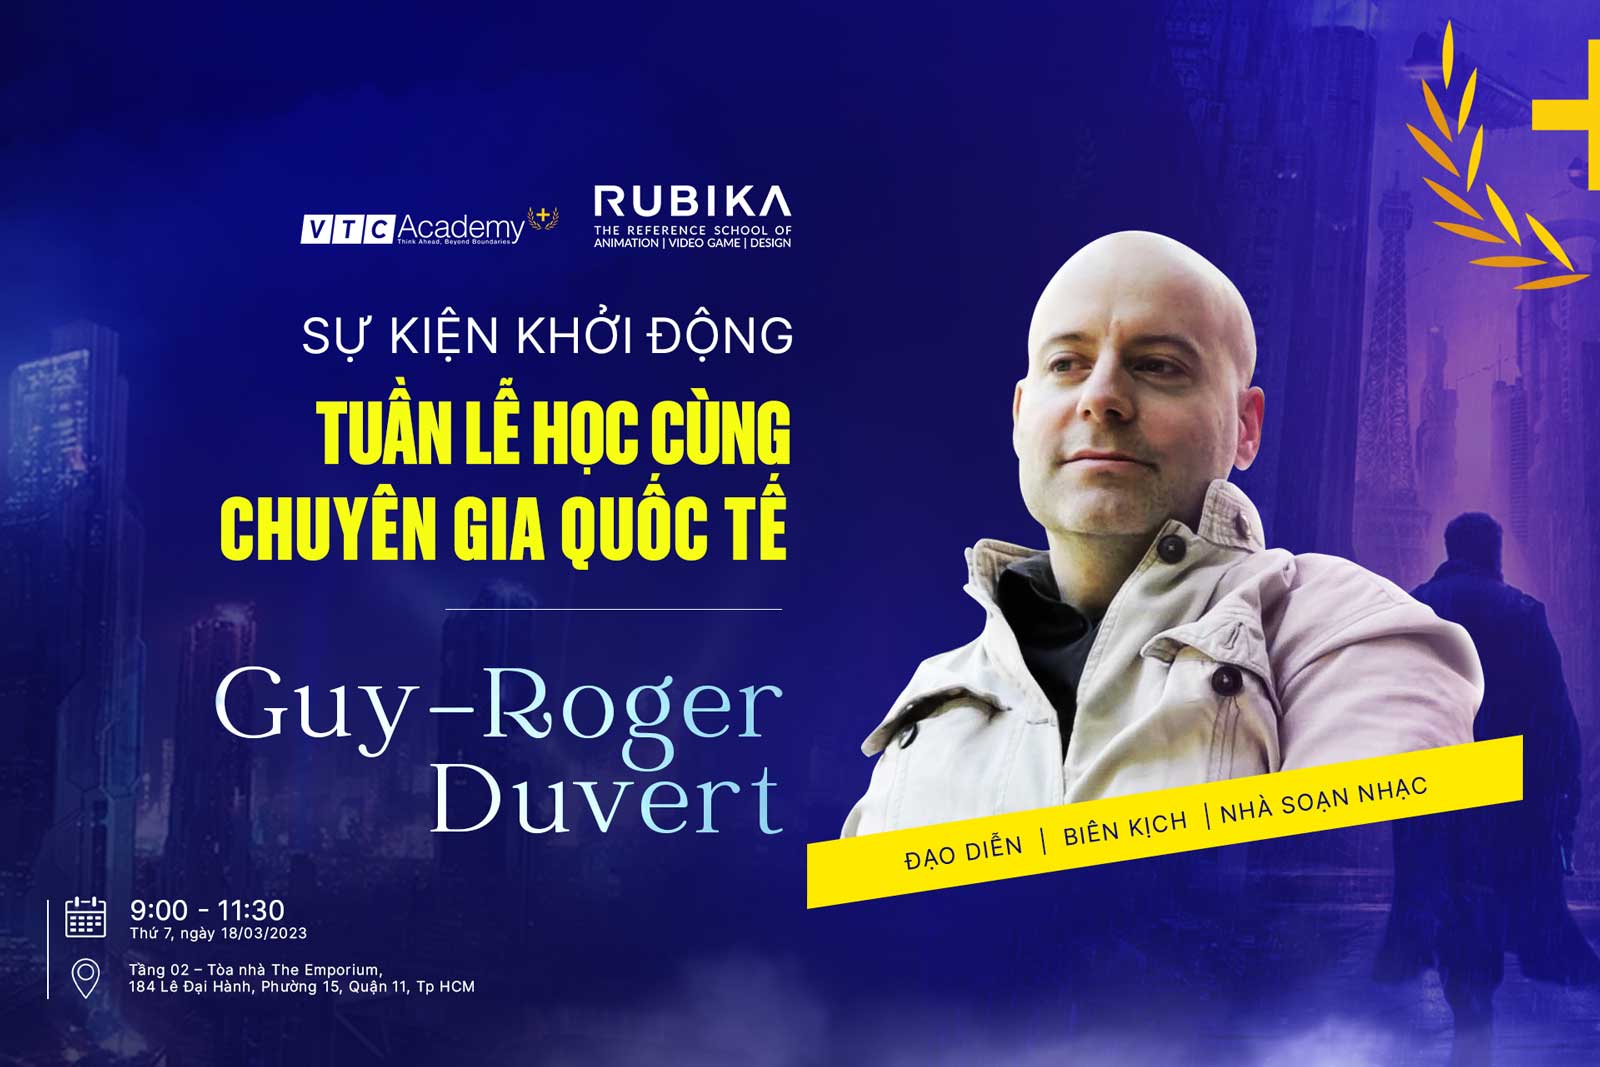 Sự kiện khởi động ”Tuần lễ học cùng chuyên gia quốc tế – Guy-Roger Duvert”